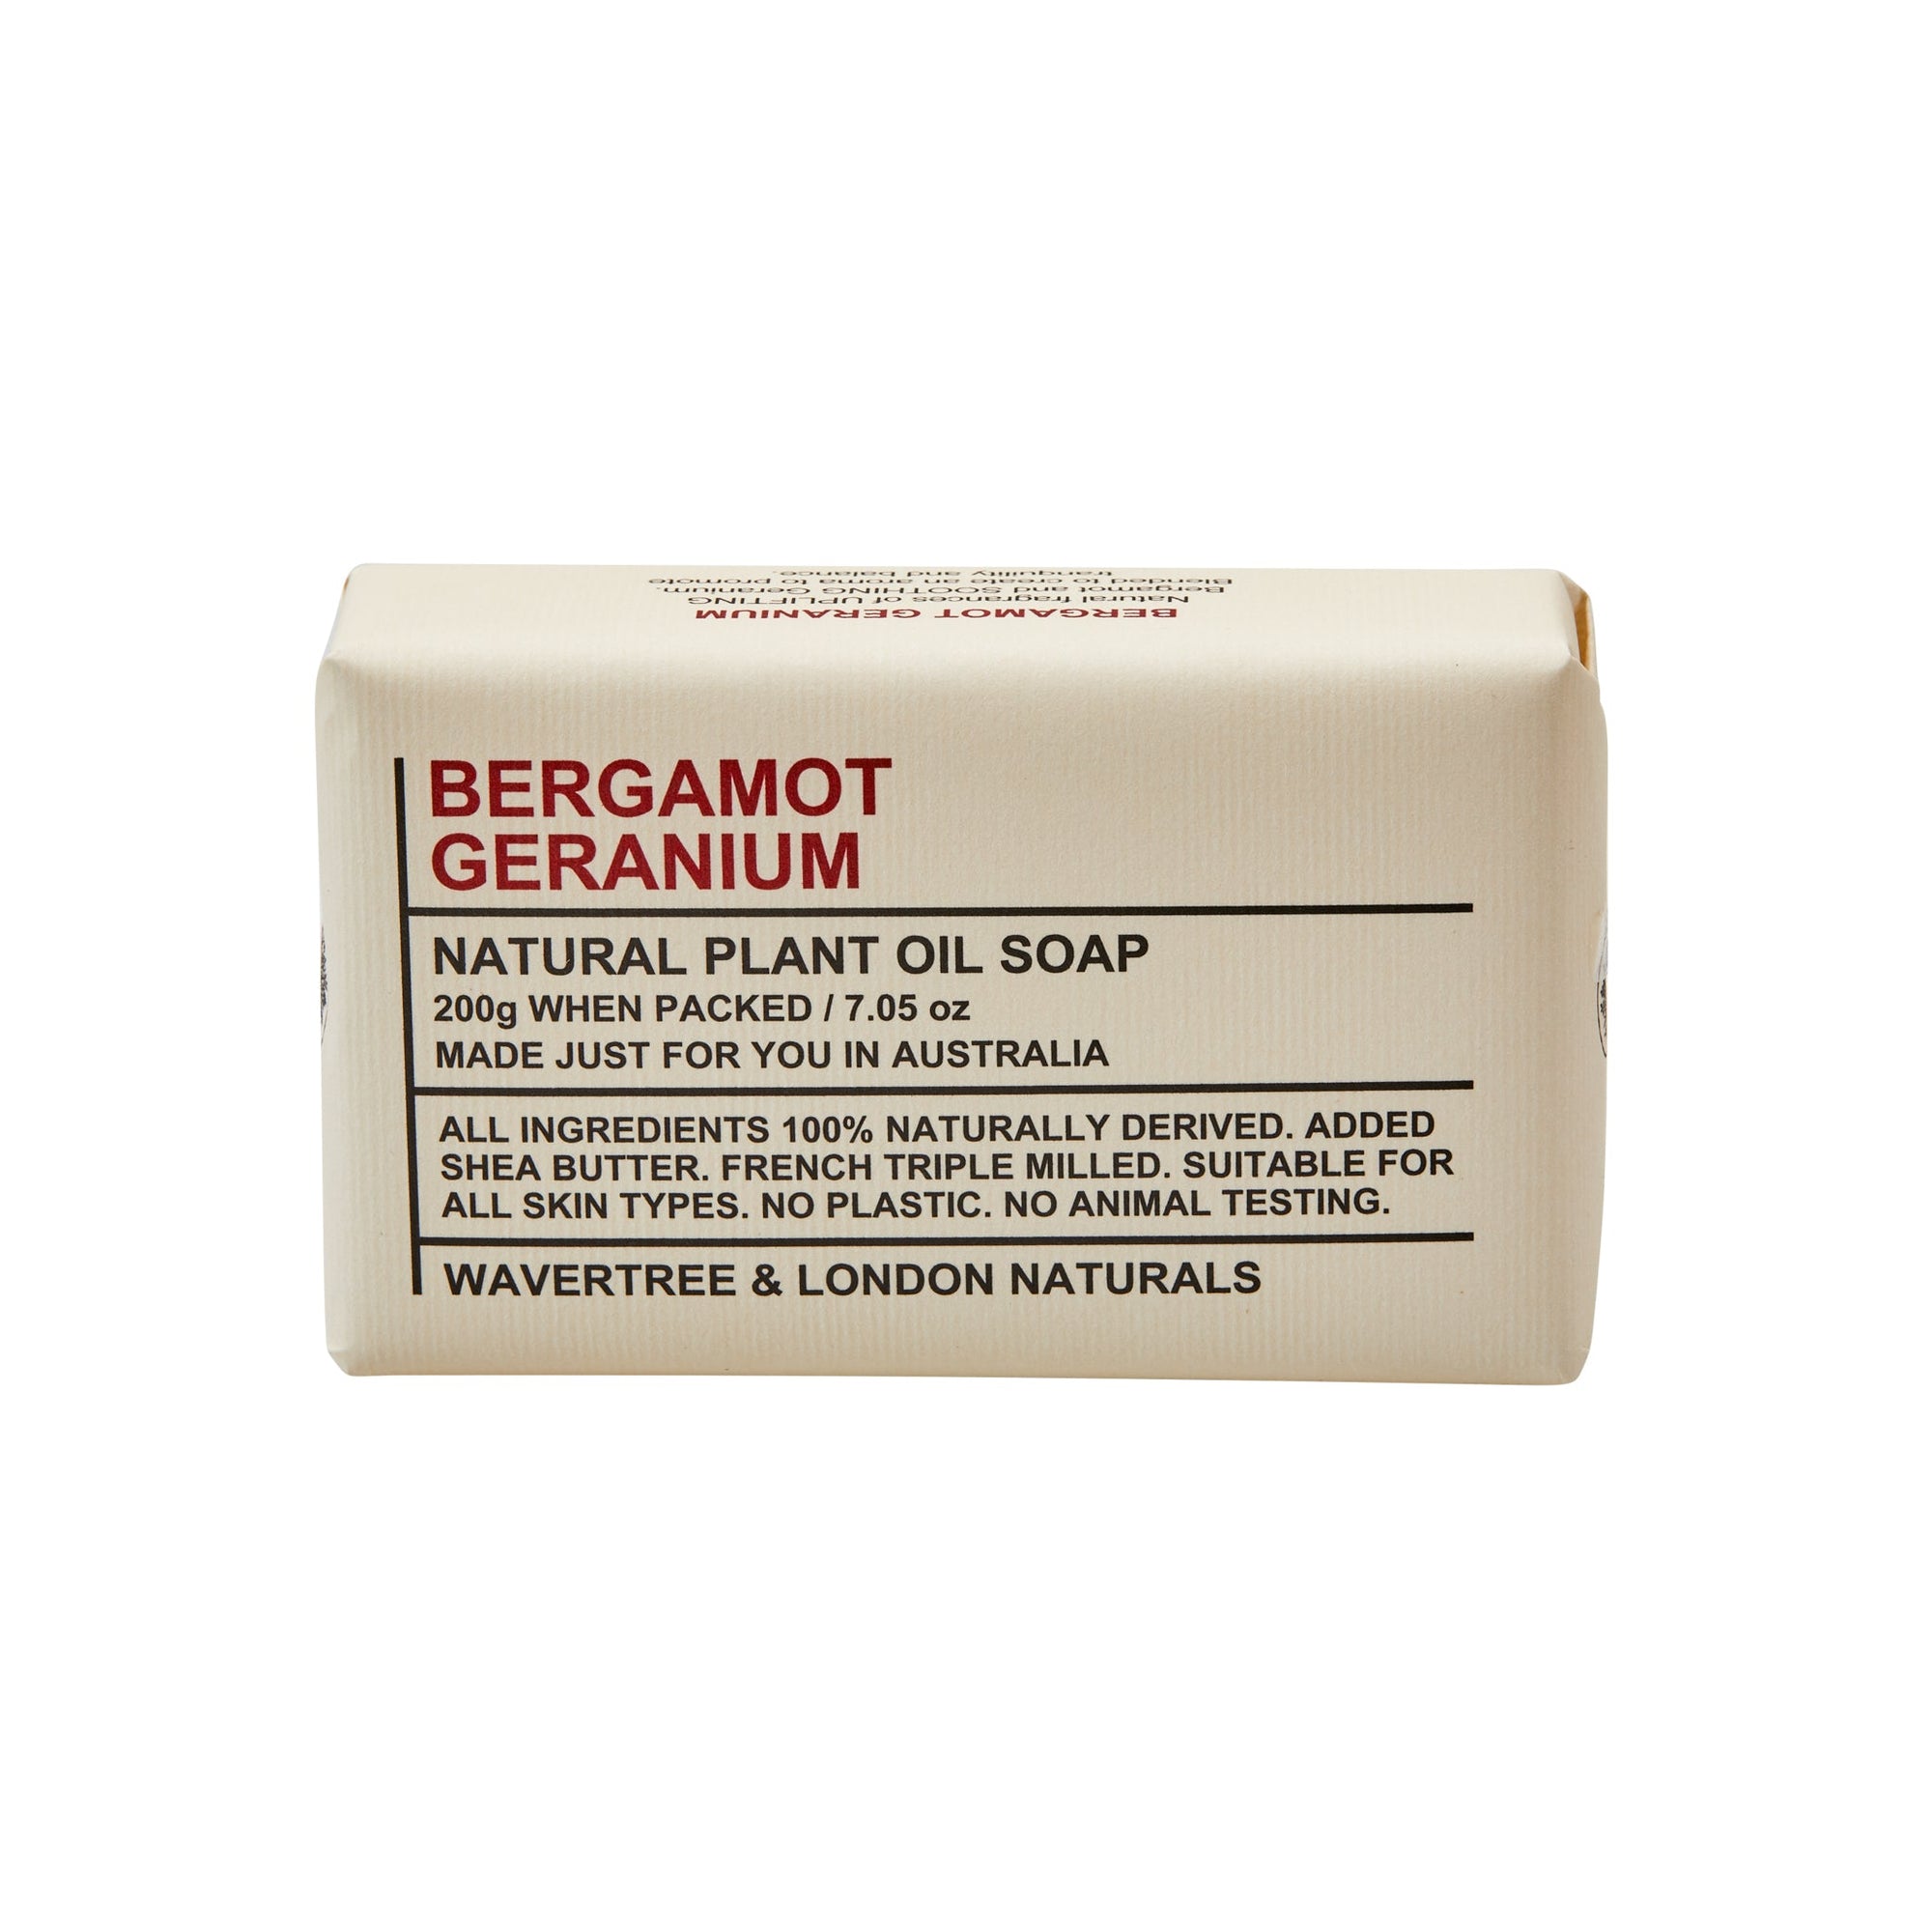 Bergamot and Geranium Soap Bar carton 200g x 8